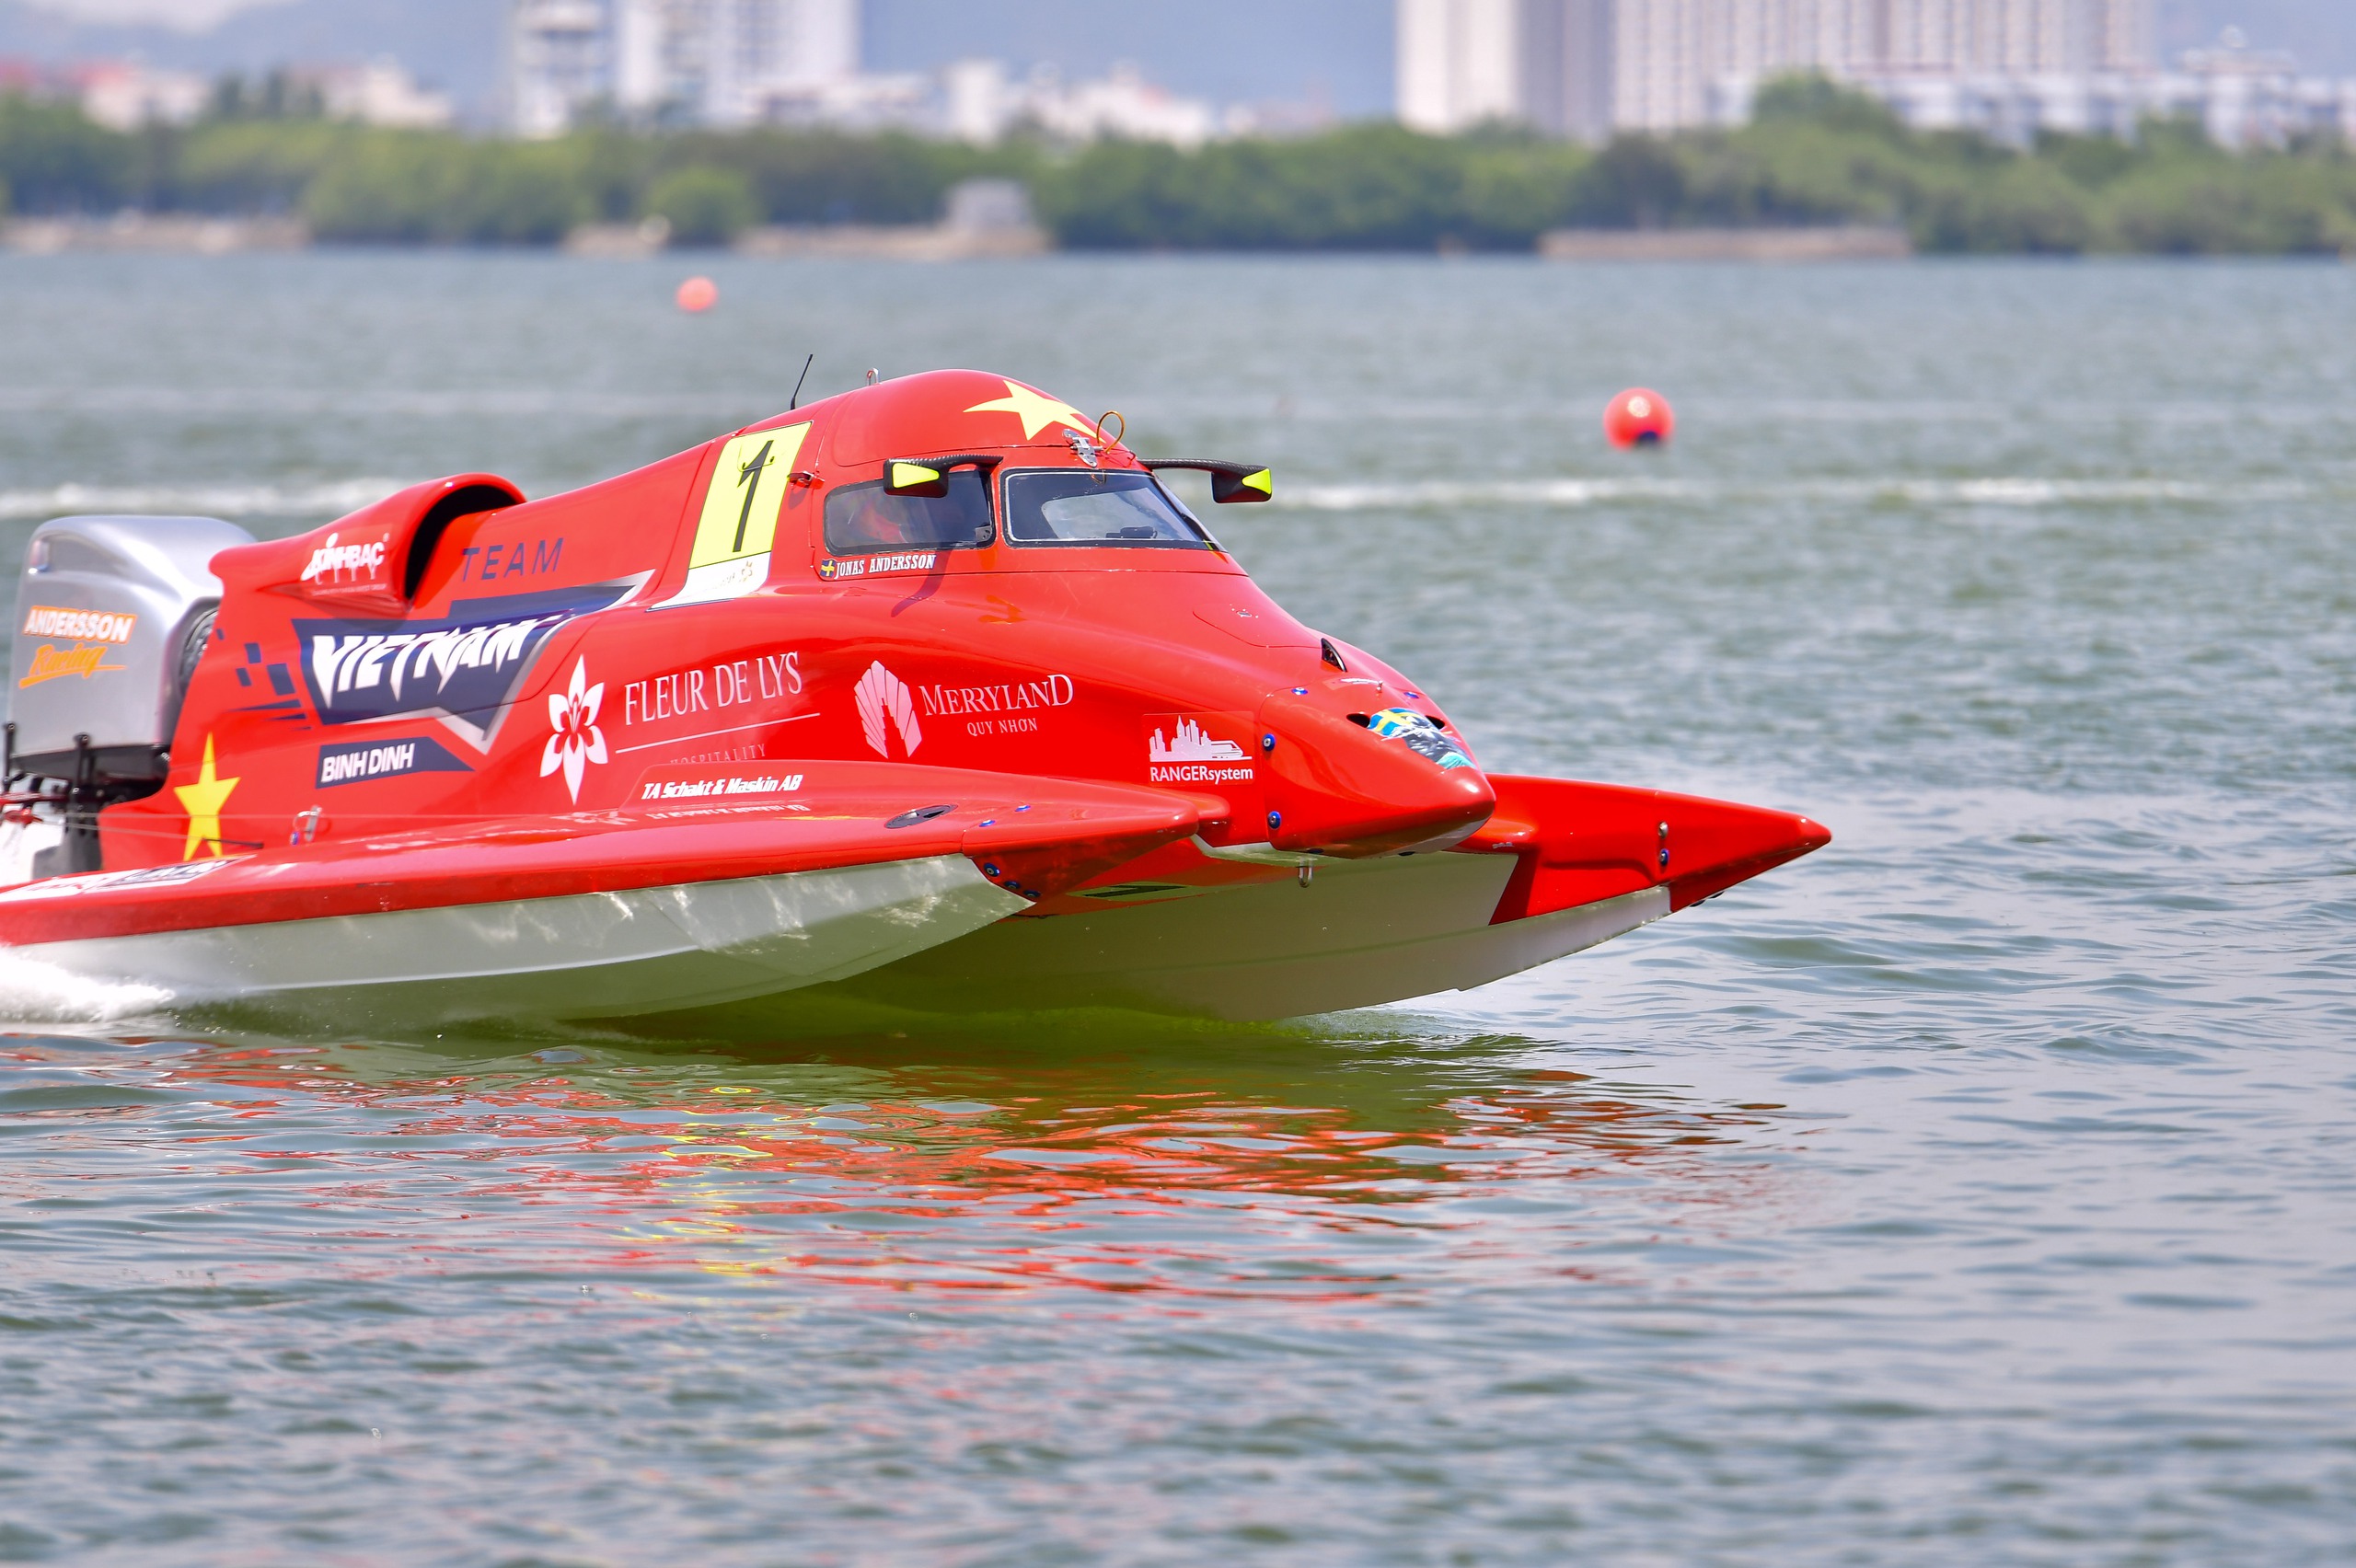 Bí thư, Chủ tịch Bình Định chứng kiến khoảnh khắc thuyền máy F1 "siêu đắt đỏ" lướt sóng đầm Thị Nại- Ảnh 4.